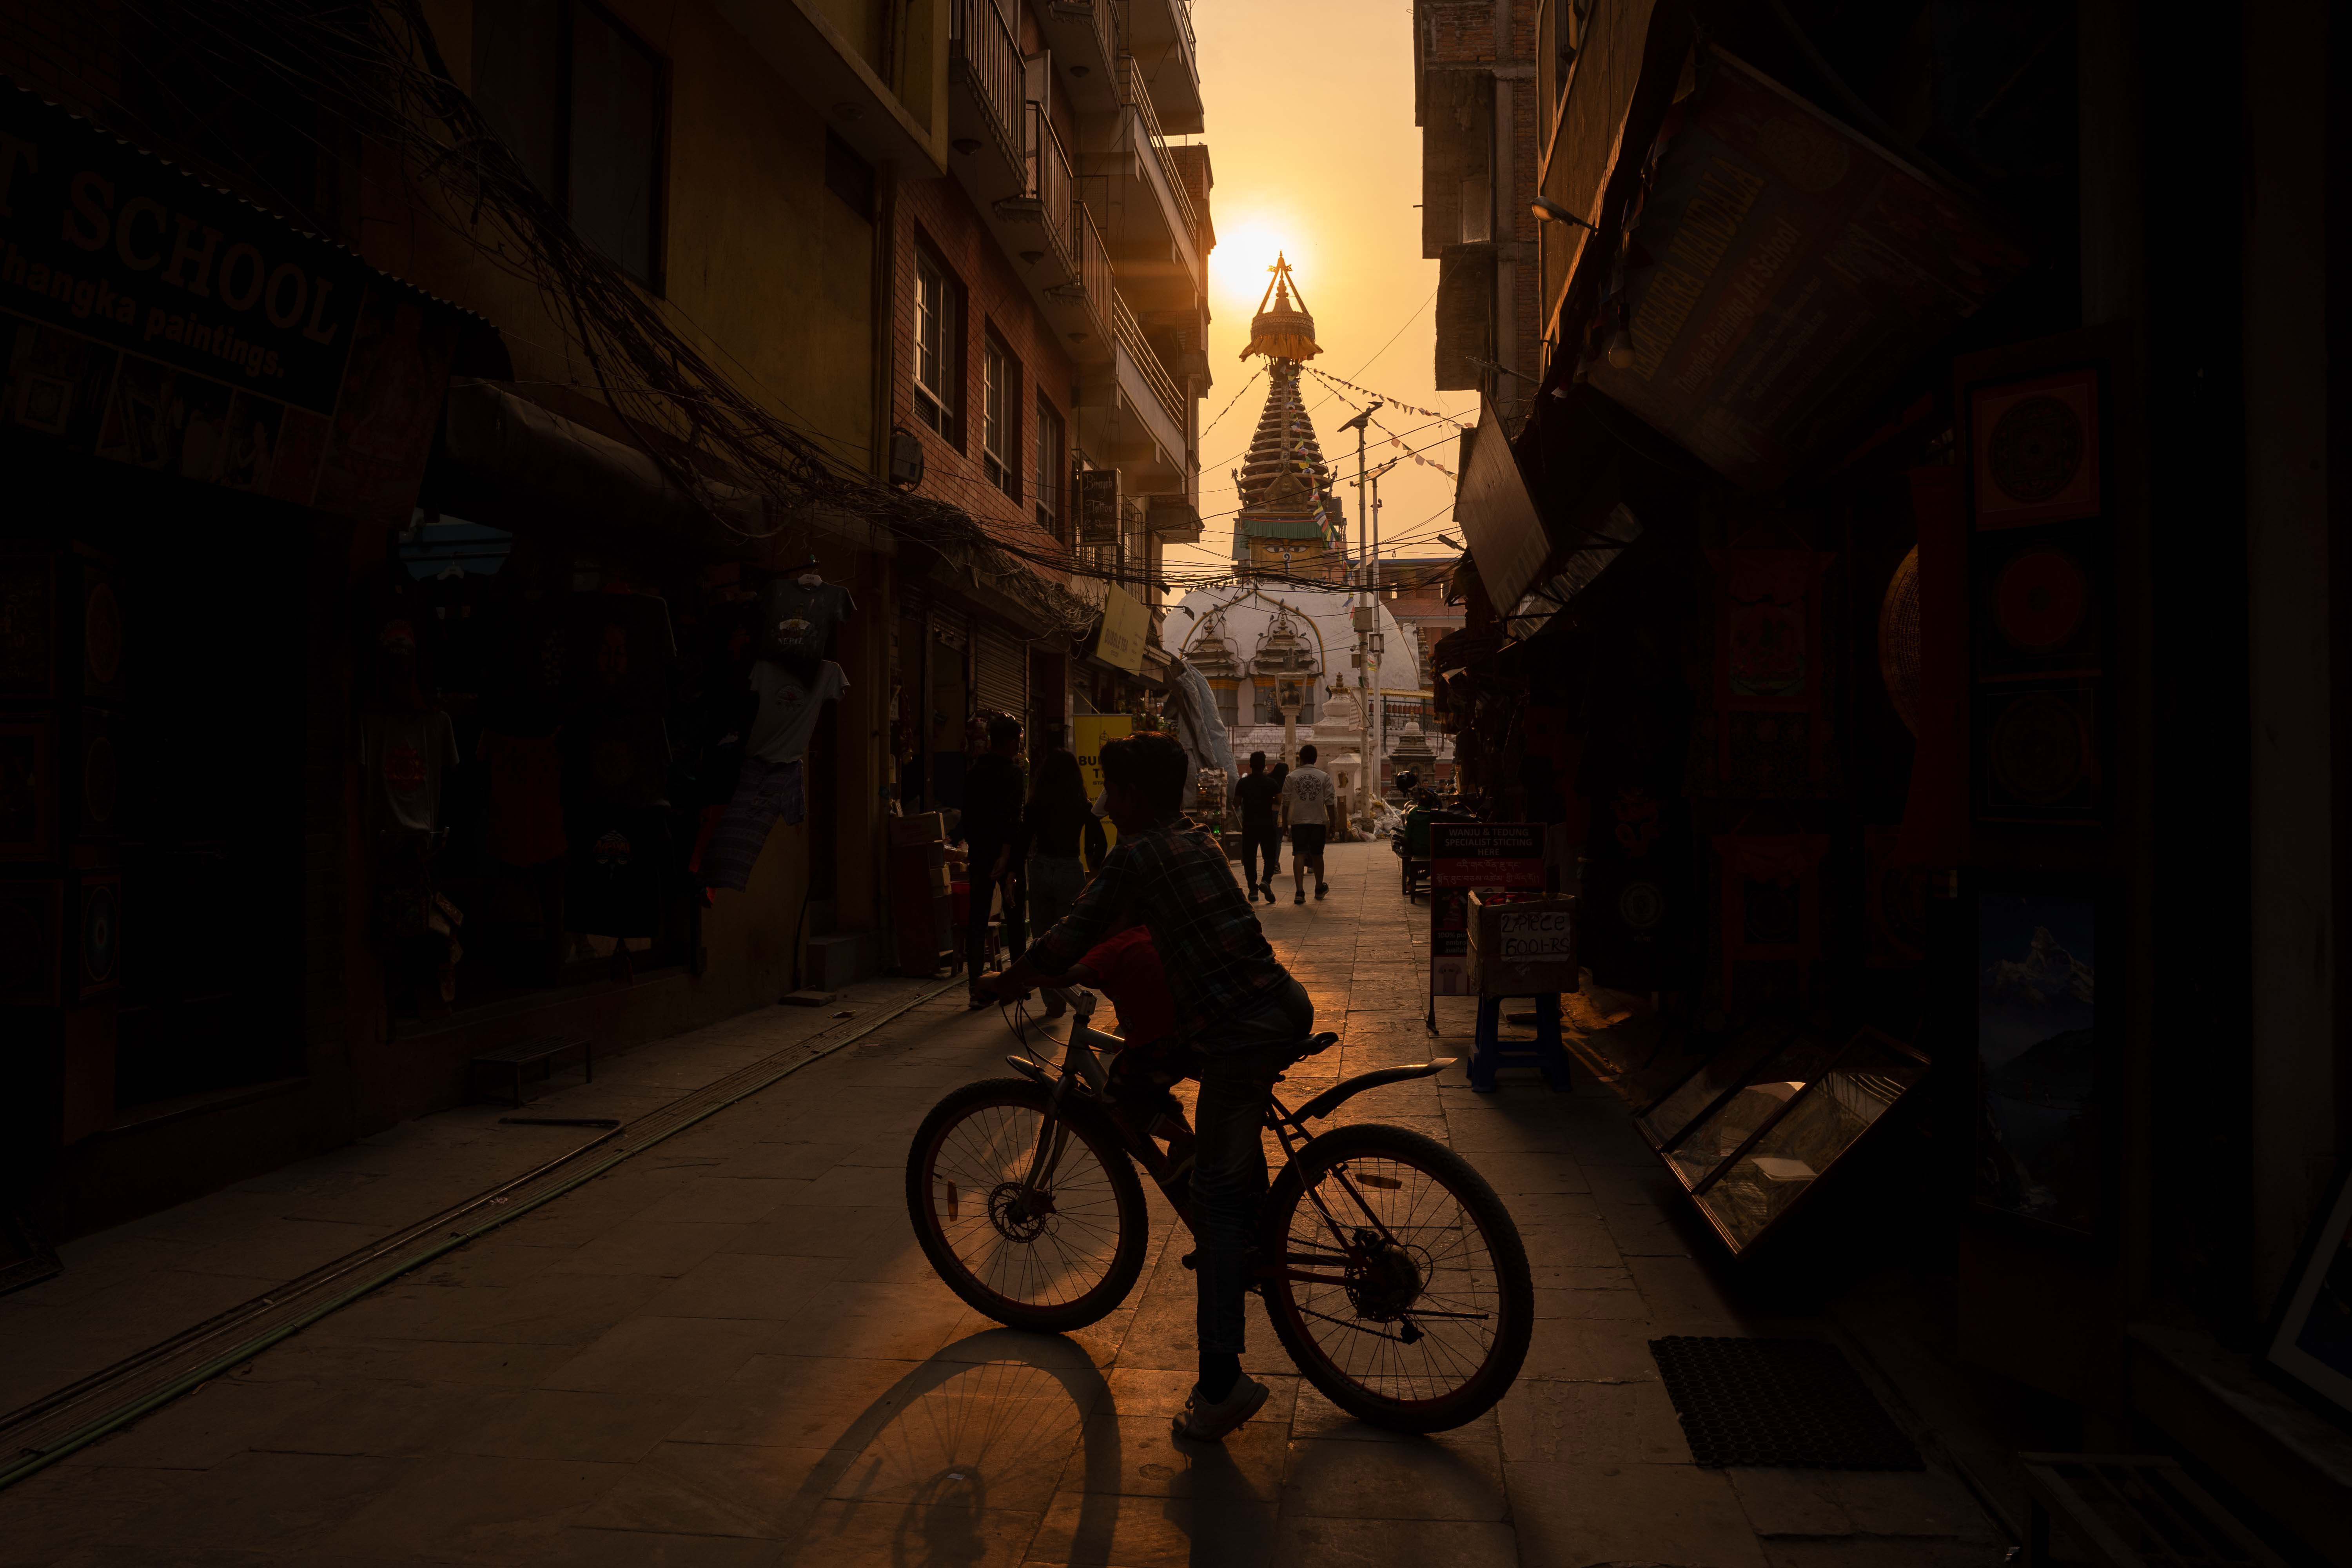 Dos niños montan en bicicleta en un estrecho callejón vacío mirando hacia una estupa budista el 23 de junio. La urbanización incontrolada ha congestionado Katmandú con pocos o ningún espacio abierto.